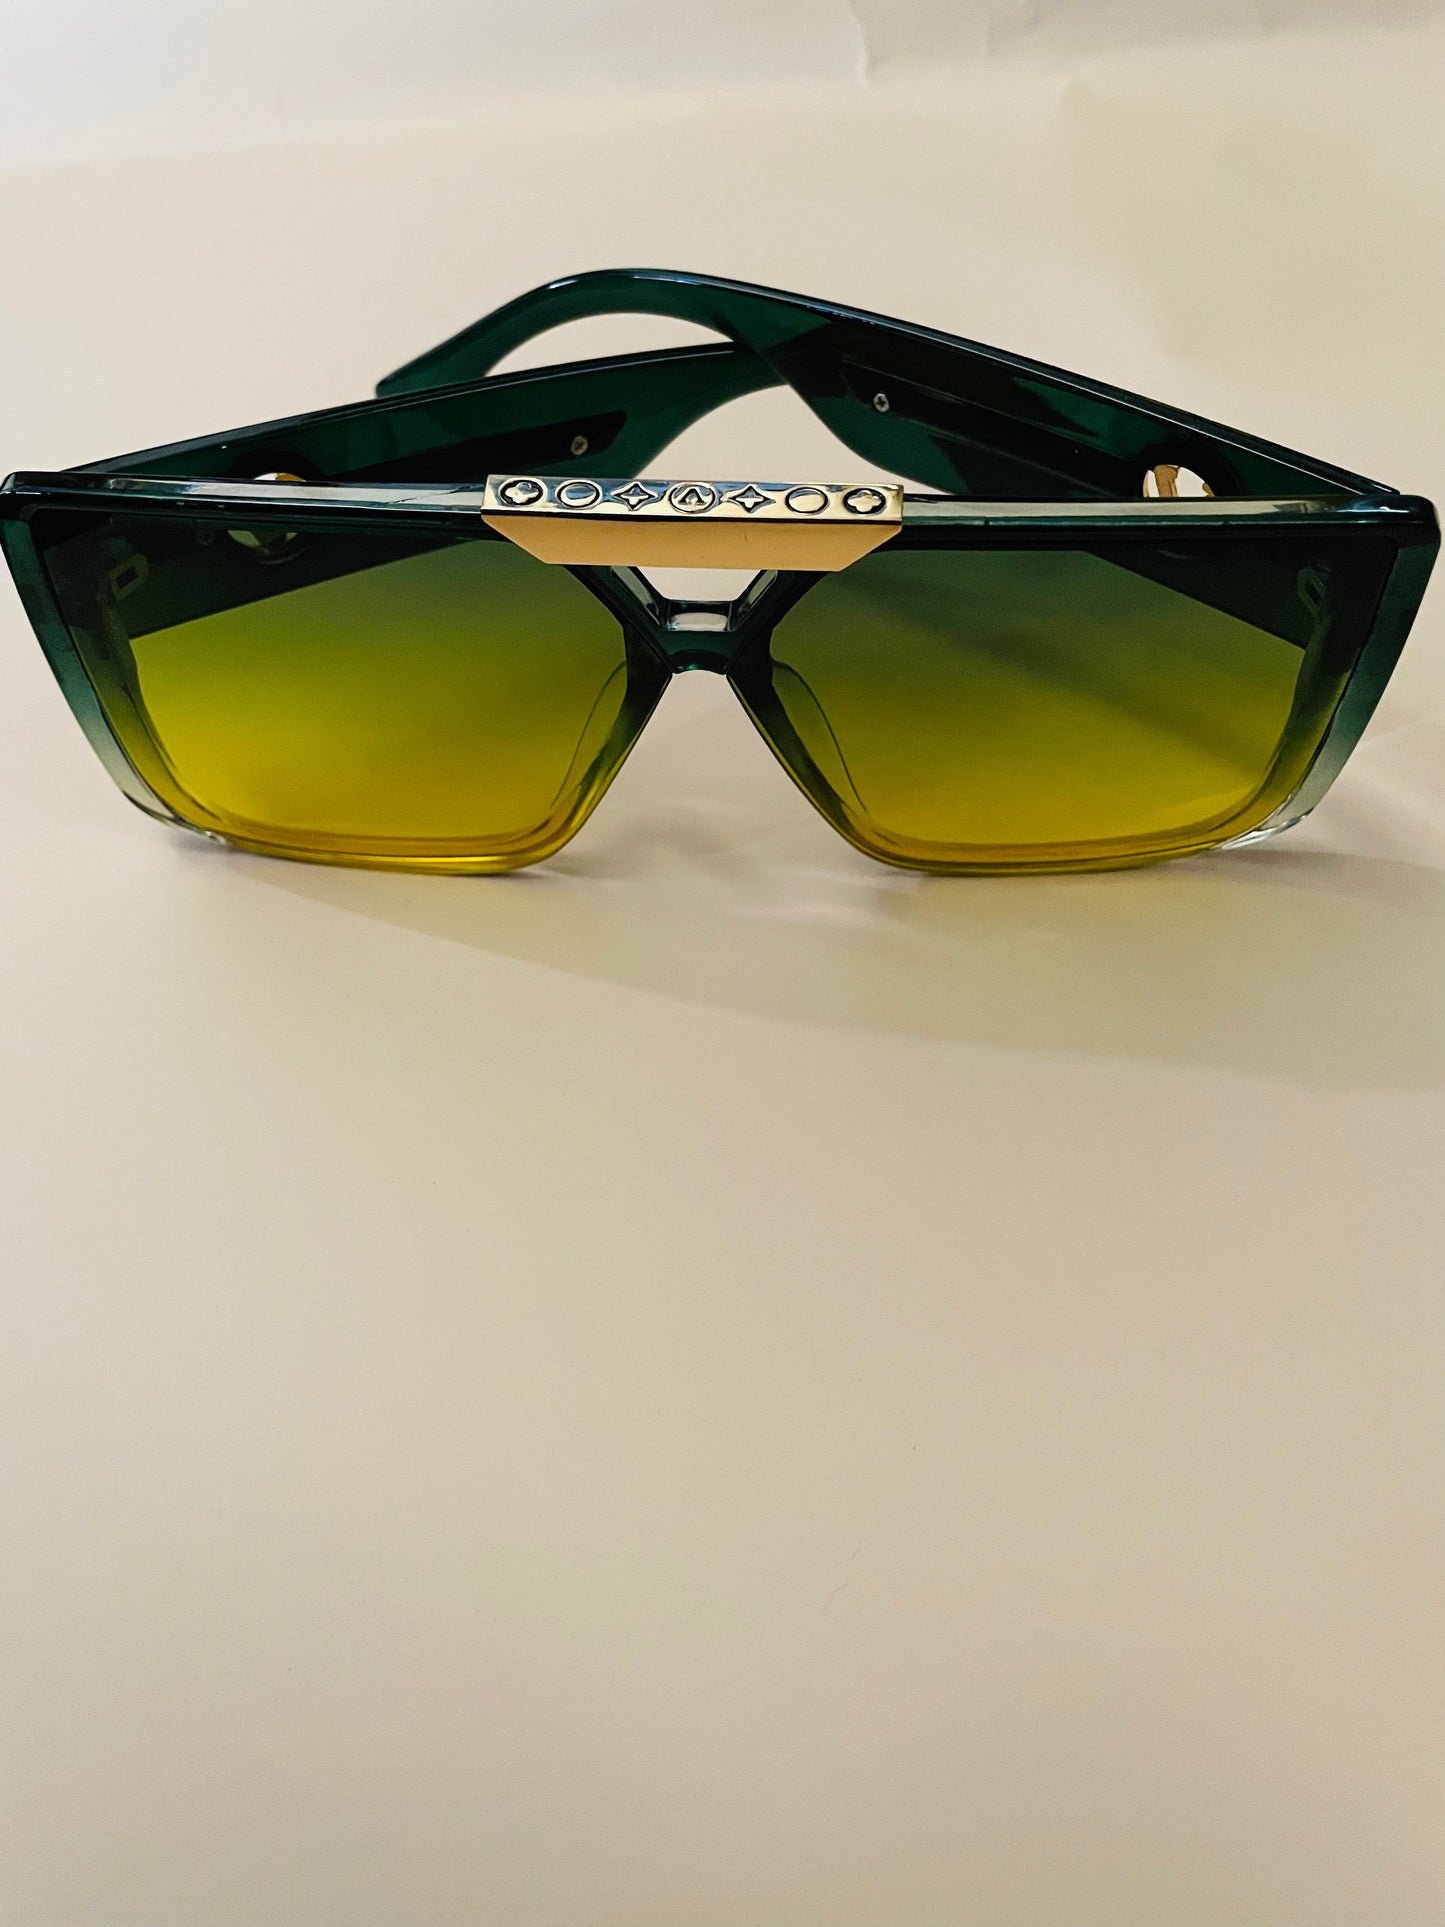 miami sunglasses cute sunglasses for women luxury sunglasses for women luxury shades leopard sunglasses light sunglasses